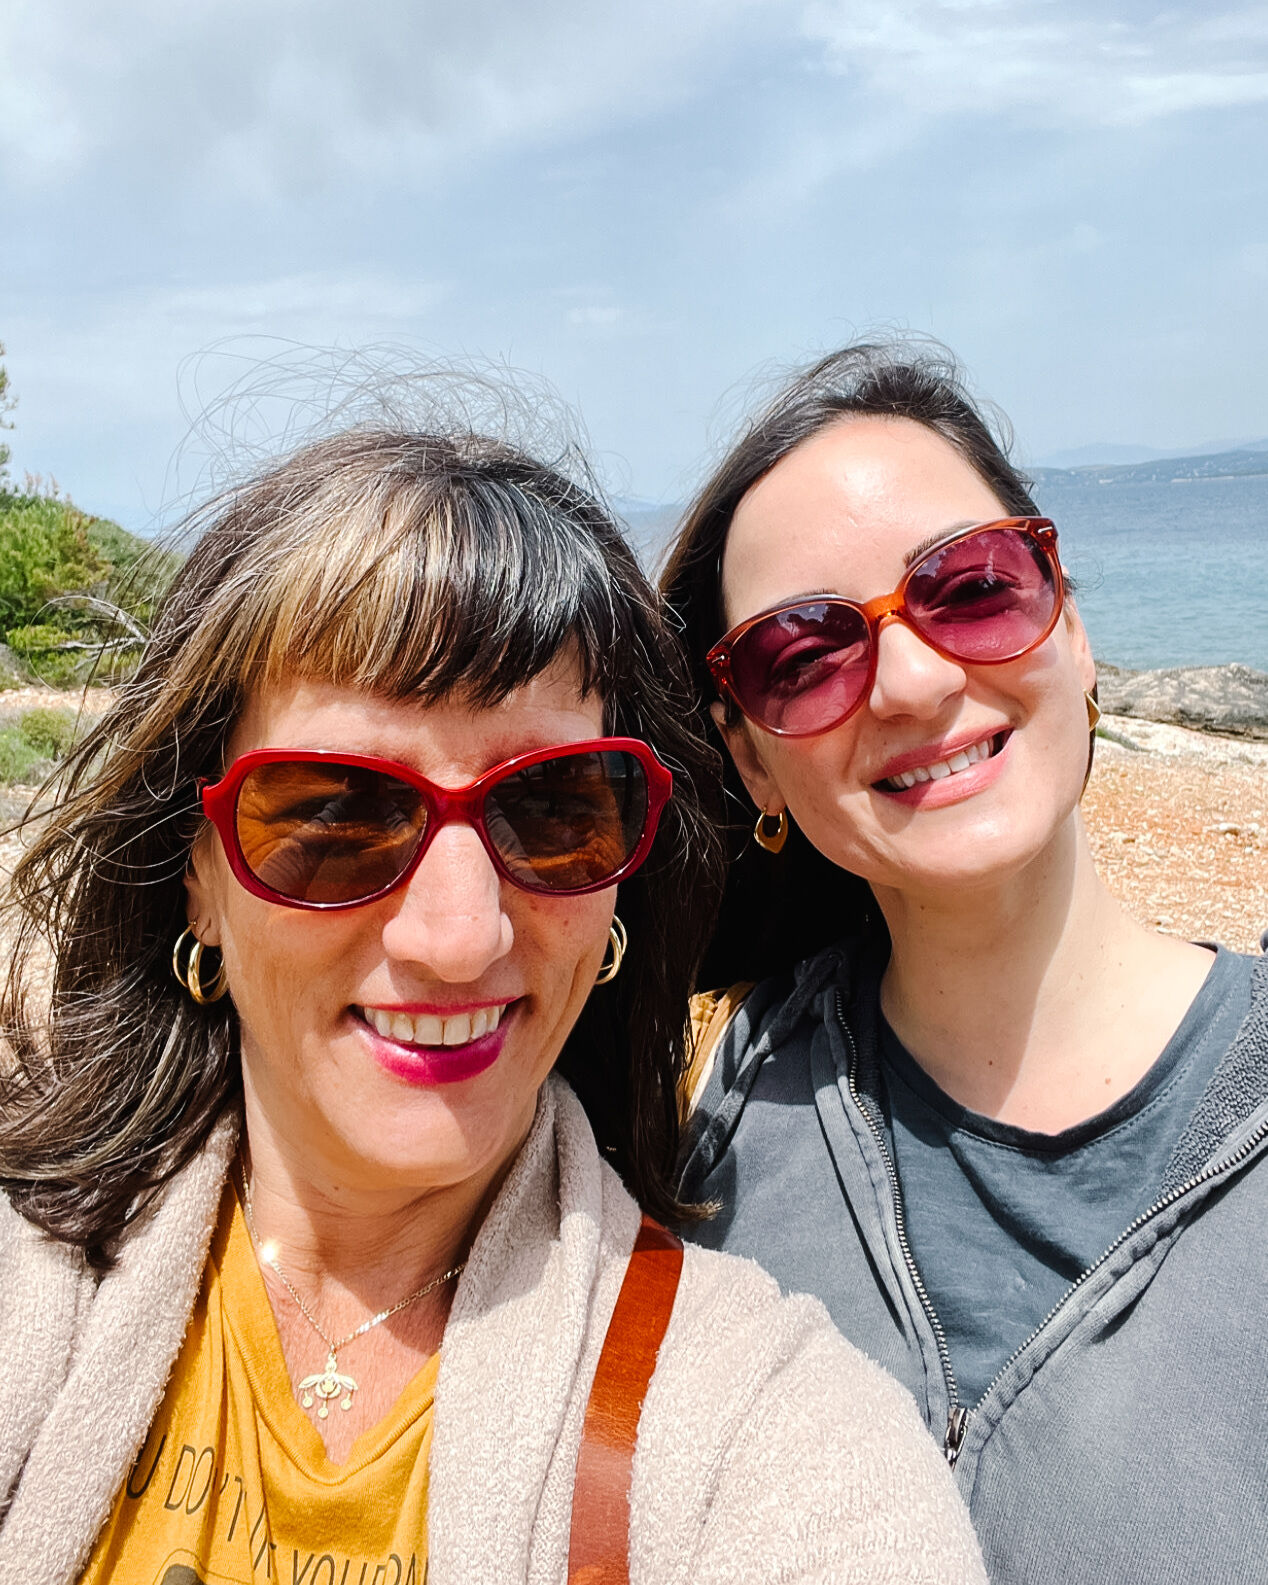 Elli Milan and Eva Bratopoulou smiling on the beaches of Greece